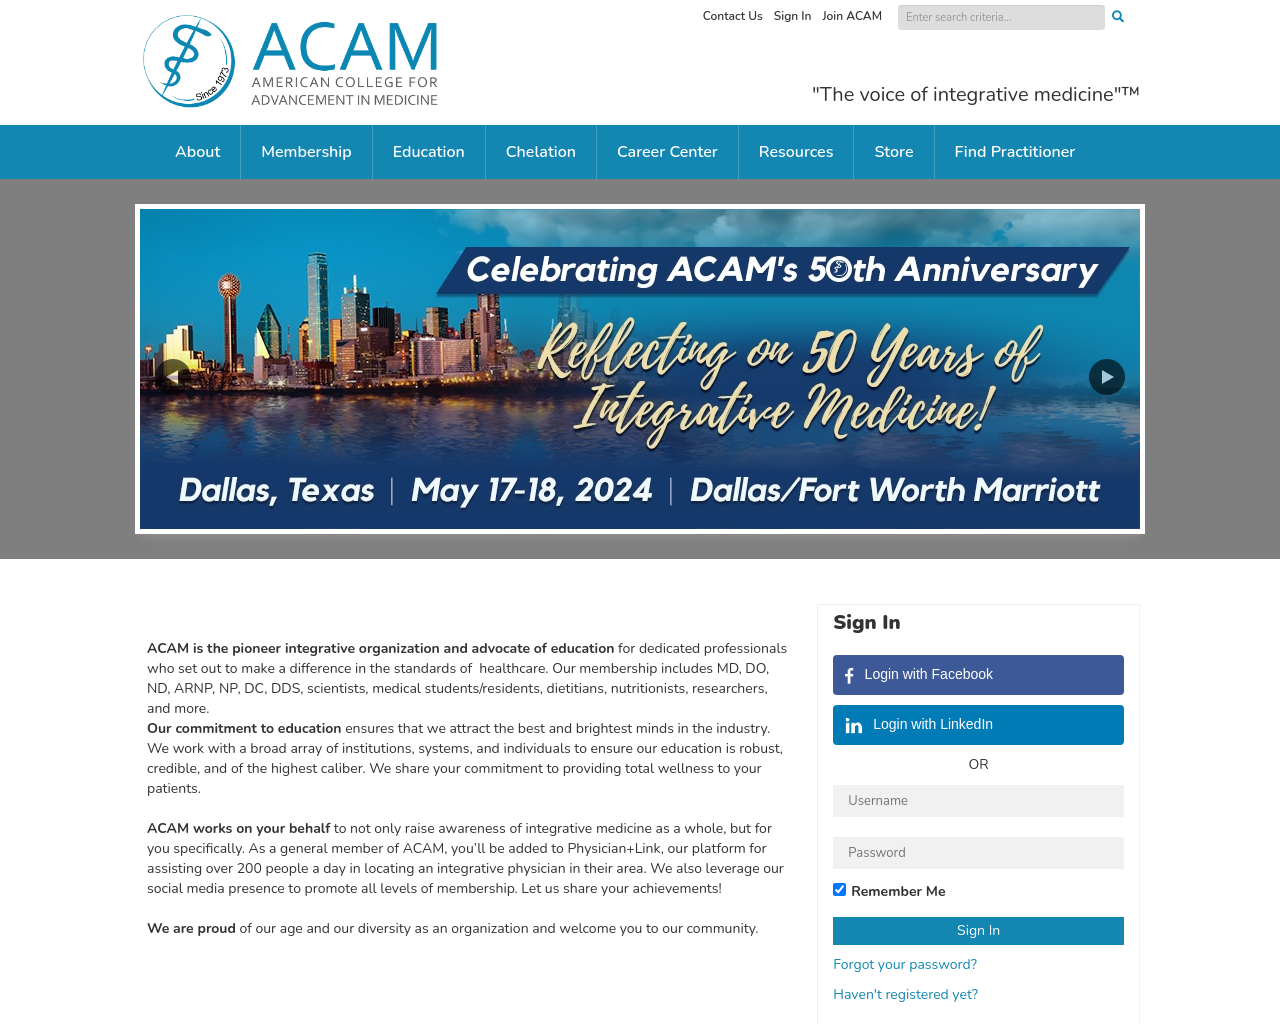 acam.org